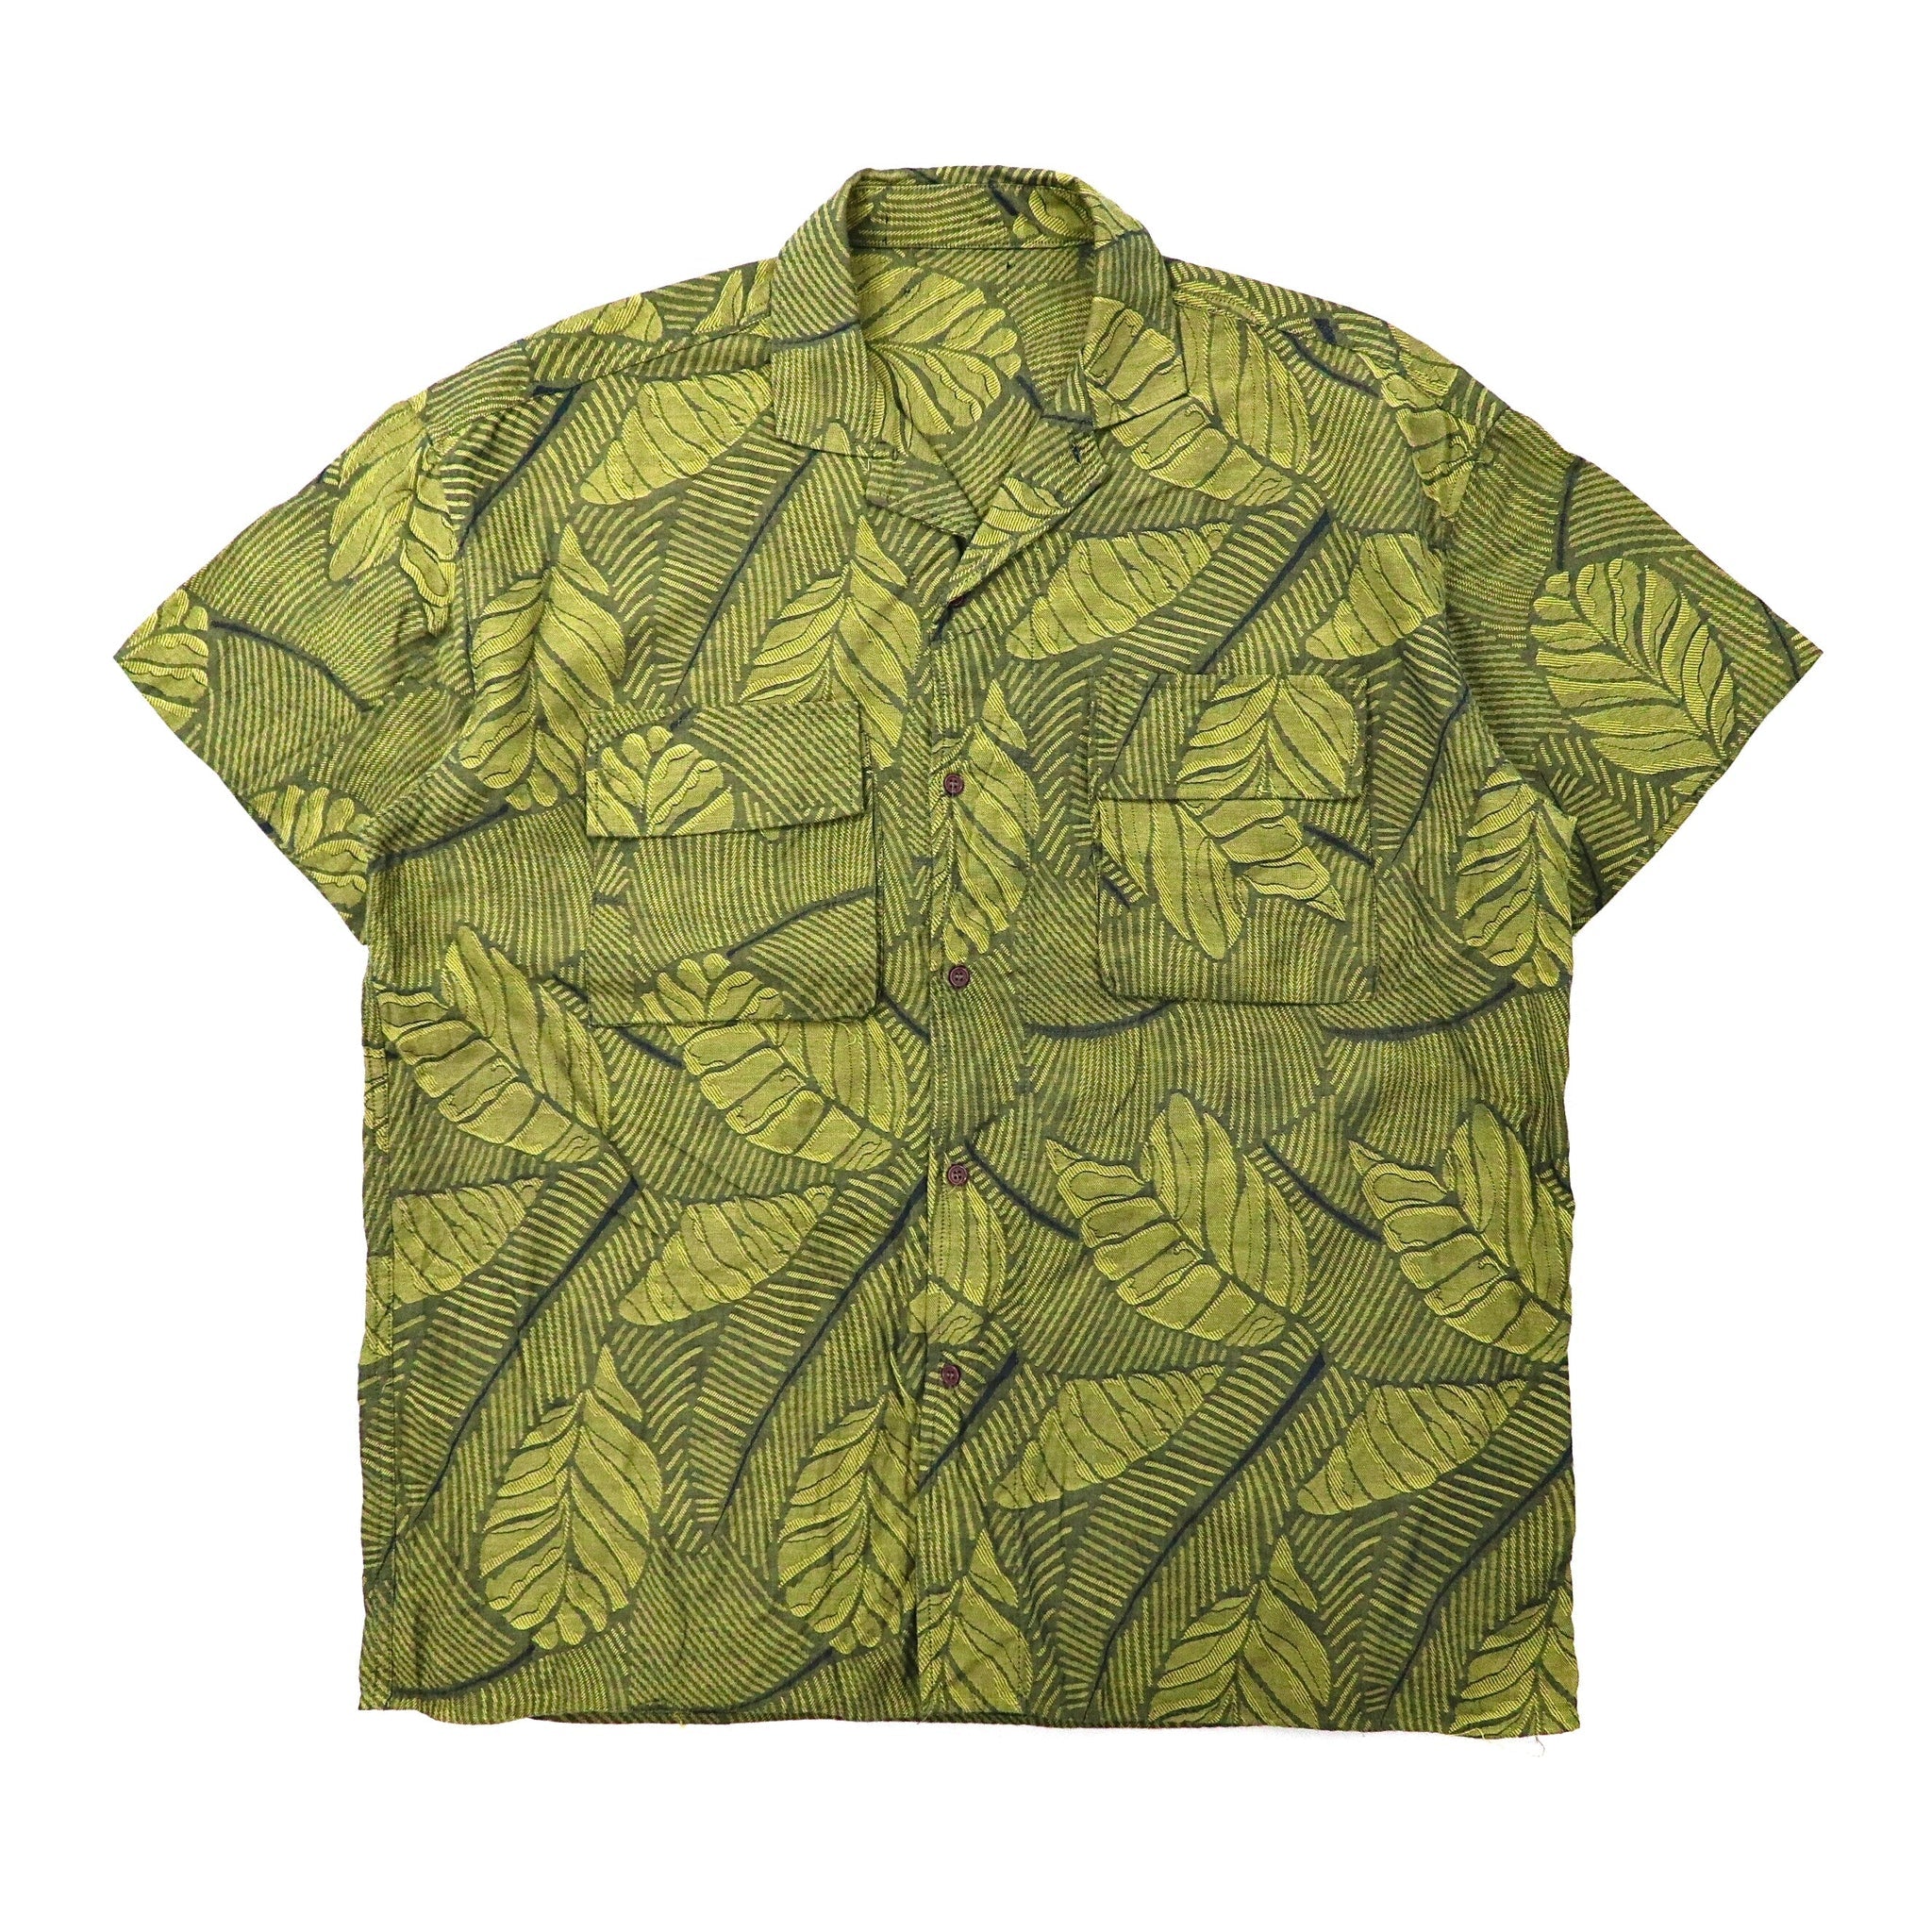 ビッグサイズ アロハシャツ XL グリーン コットン 総柄 リーフモチーフ